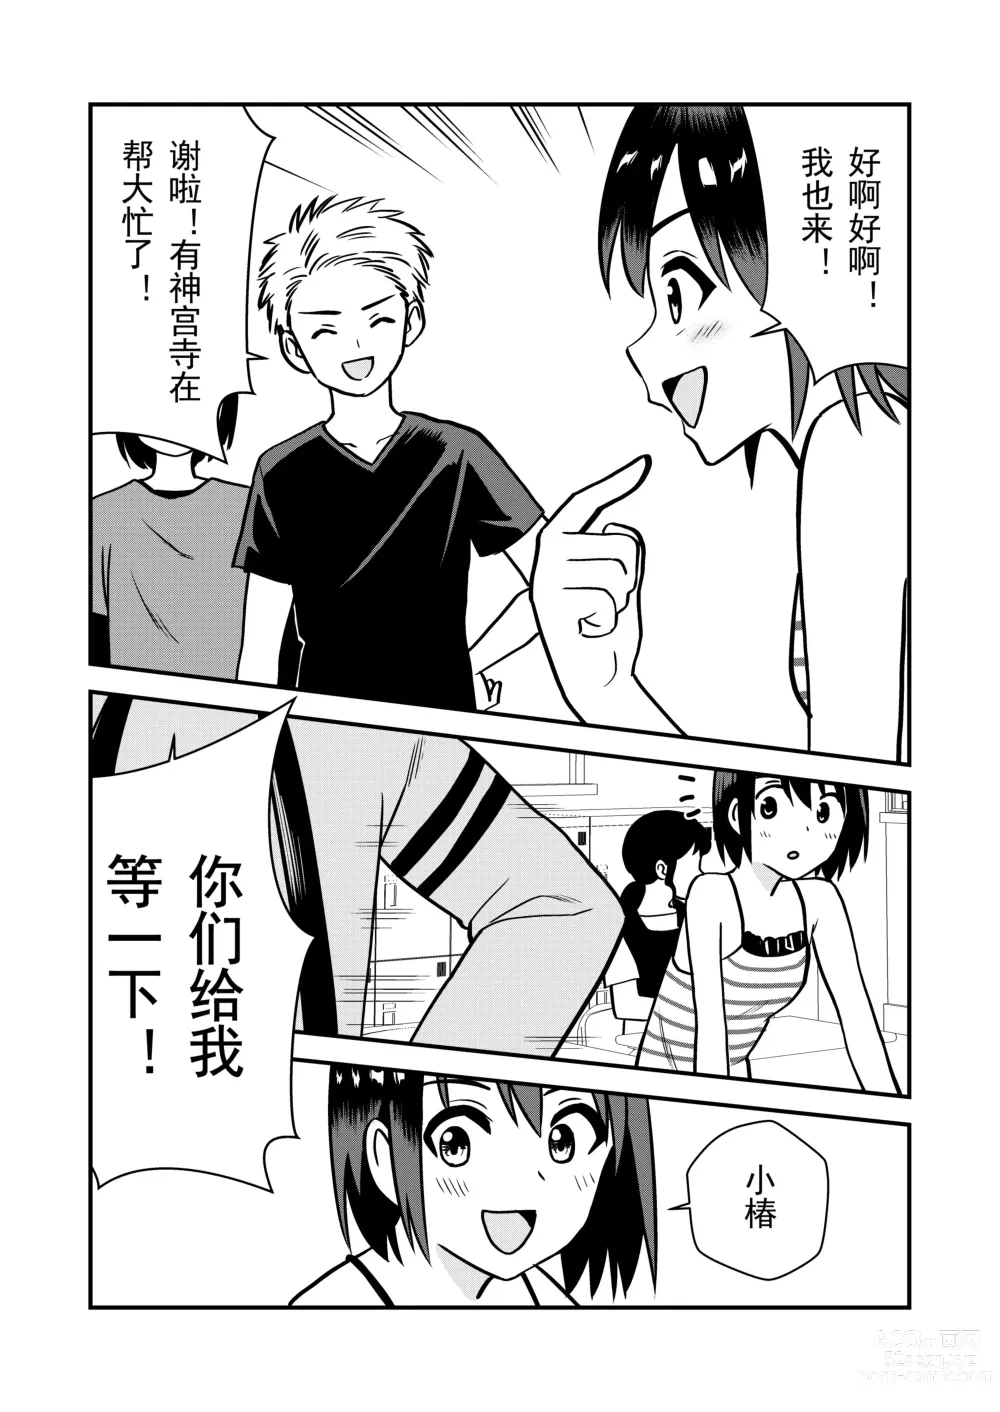 Page 6 of doujinshi 被惩罚后的当天,下半身禁止穿衣服的学校